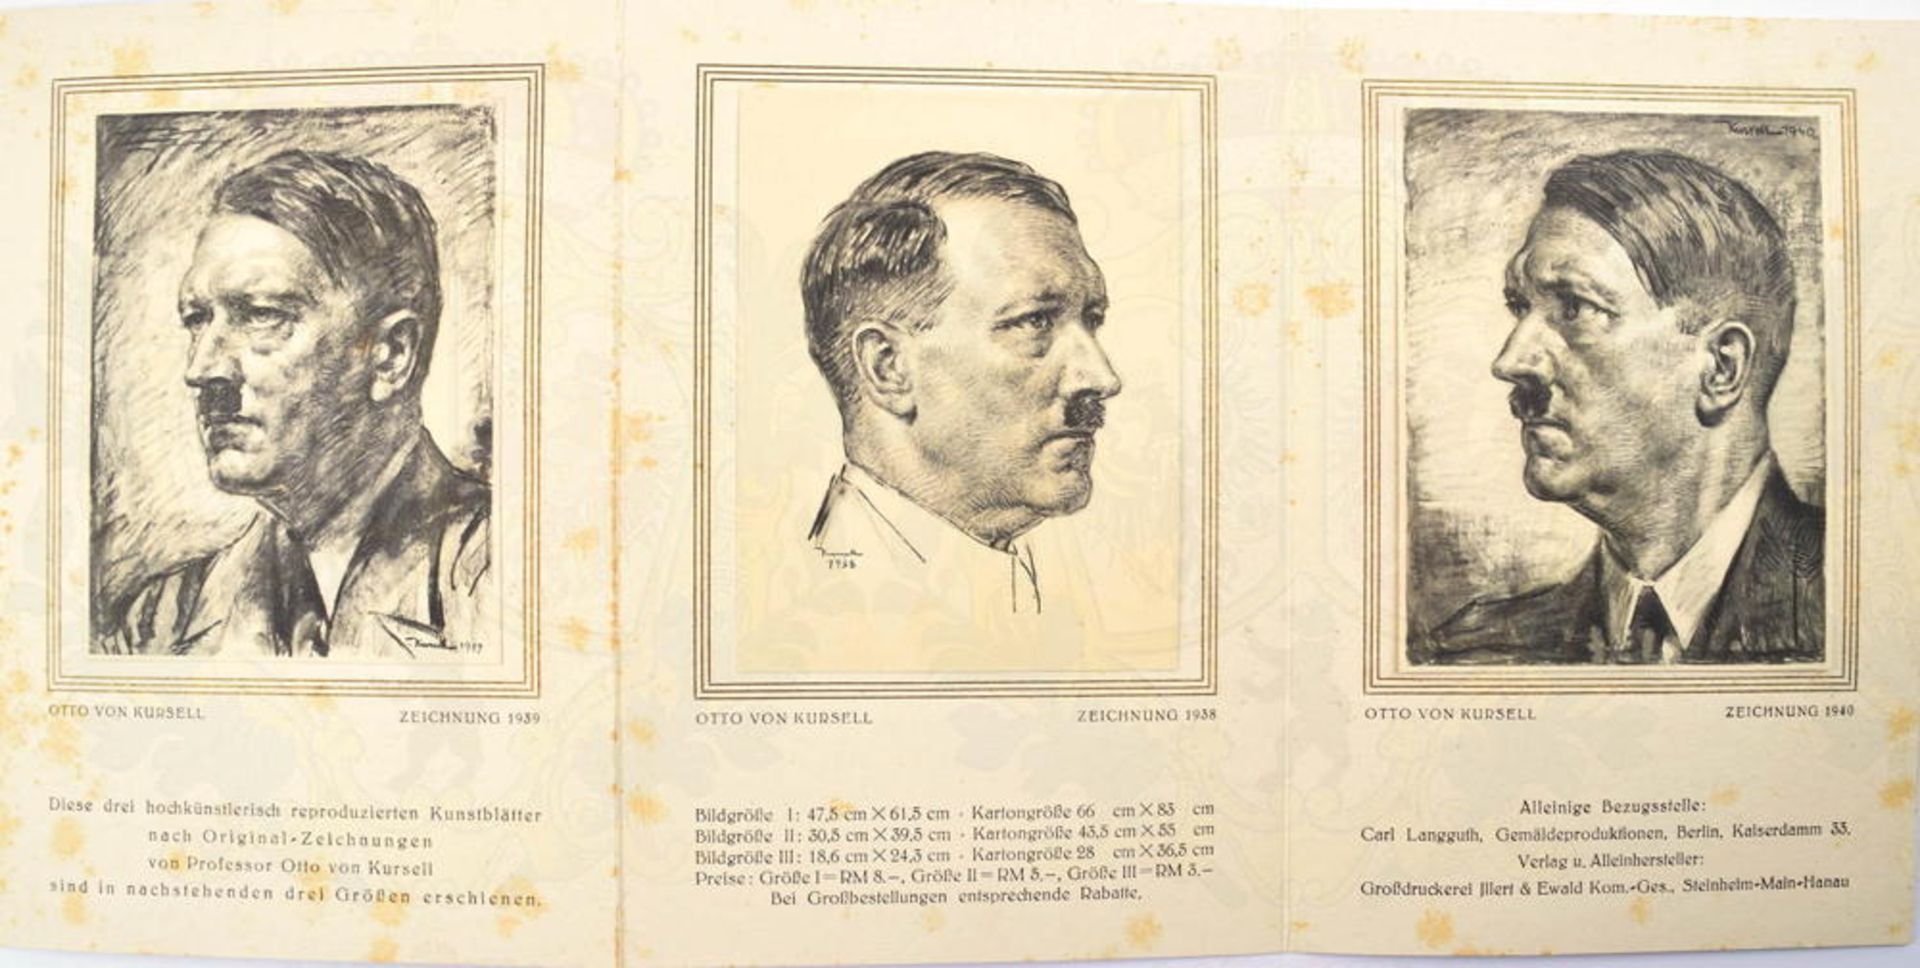 WERBE-LEPORELLO UNSER FÜHRER, m. 3 einmontierten Portraits nach Zeichnungen v. Otto von Kursell 1938 - Bild 2 aus 2